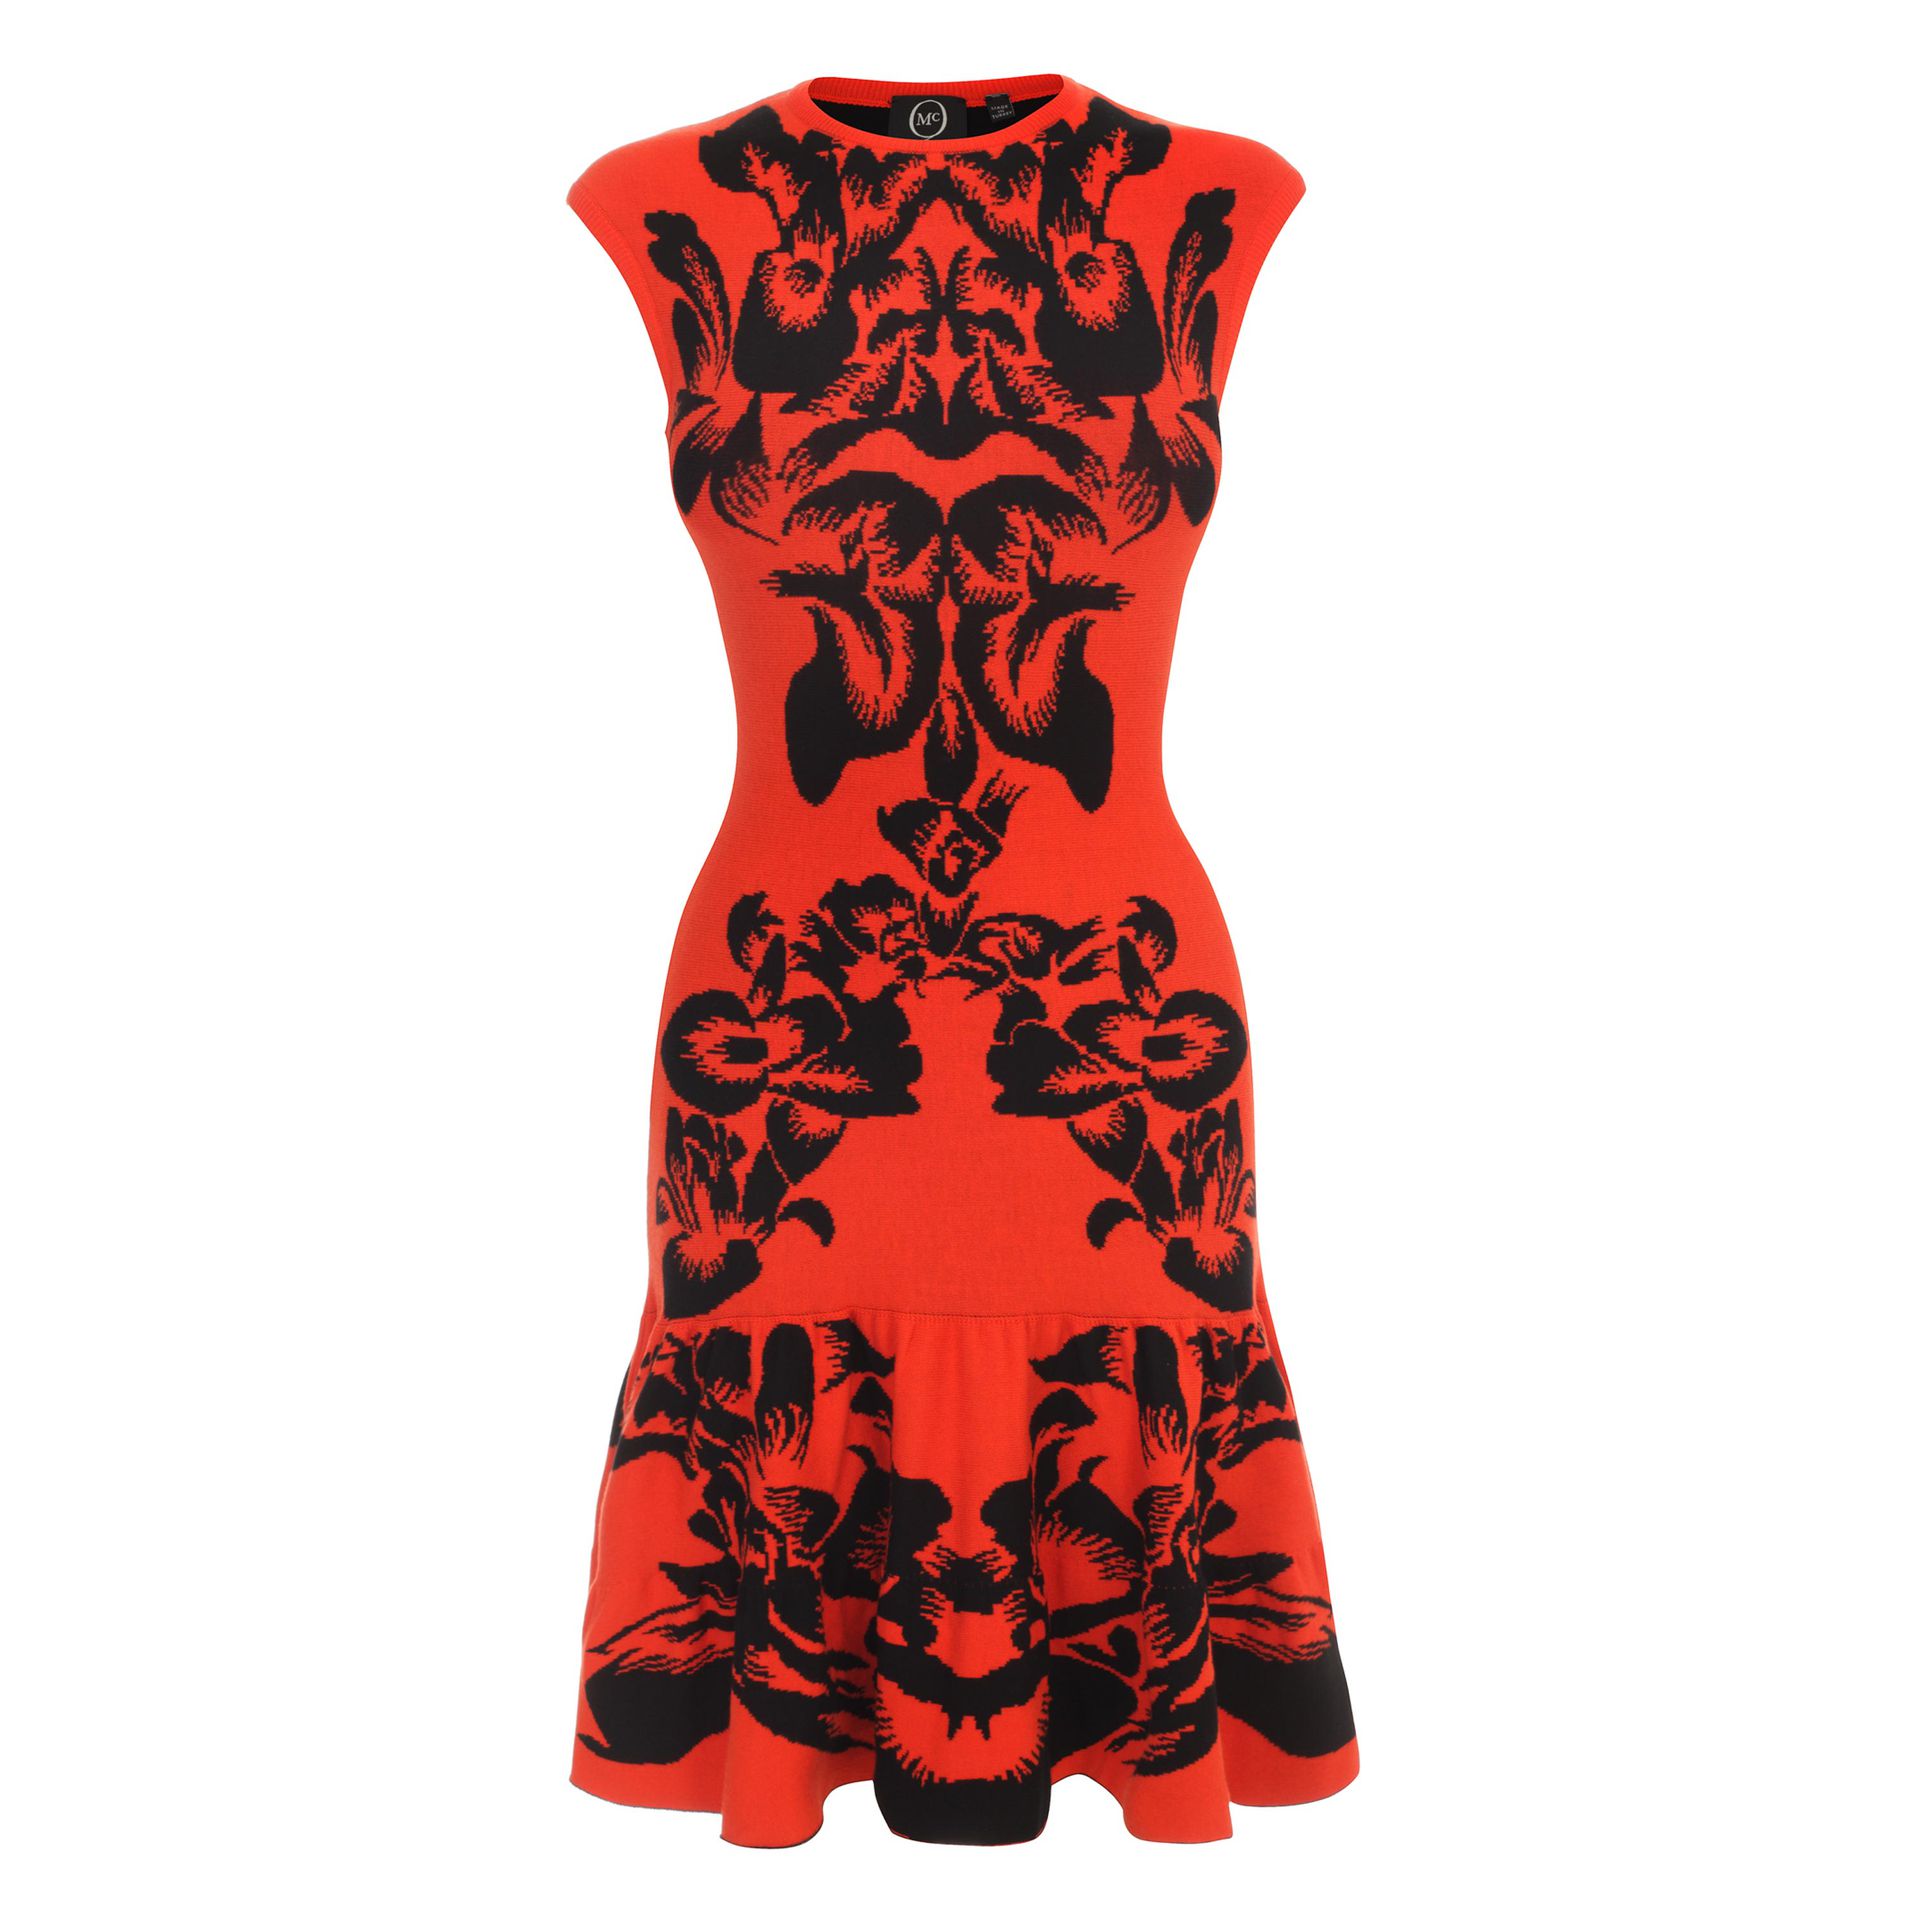 Lyst - Mcq Iris Jacquard Dress in Red